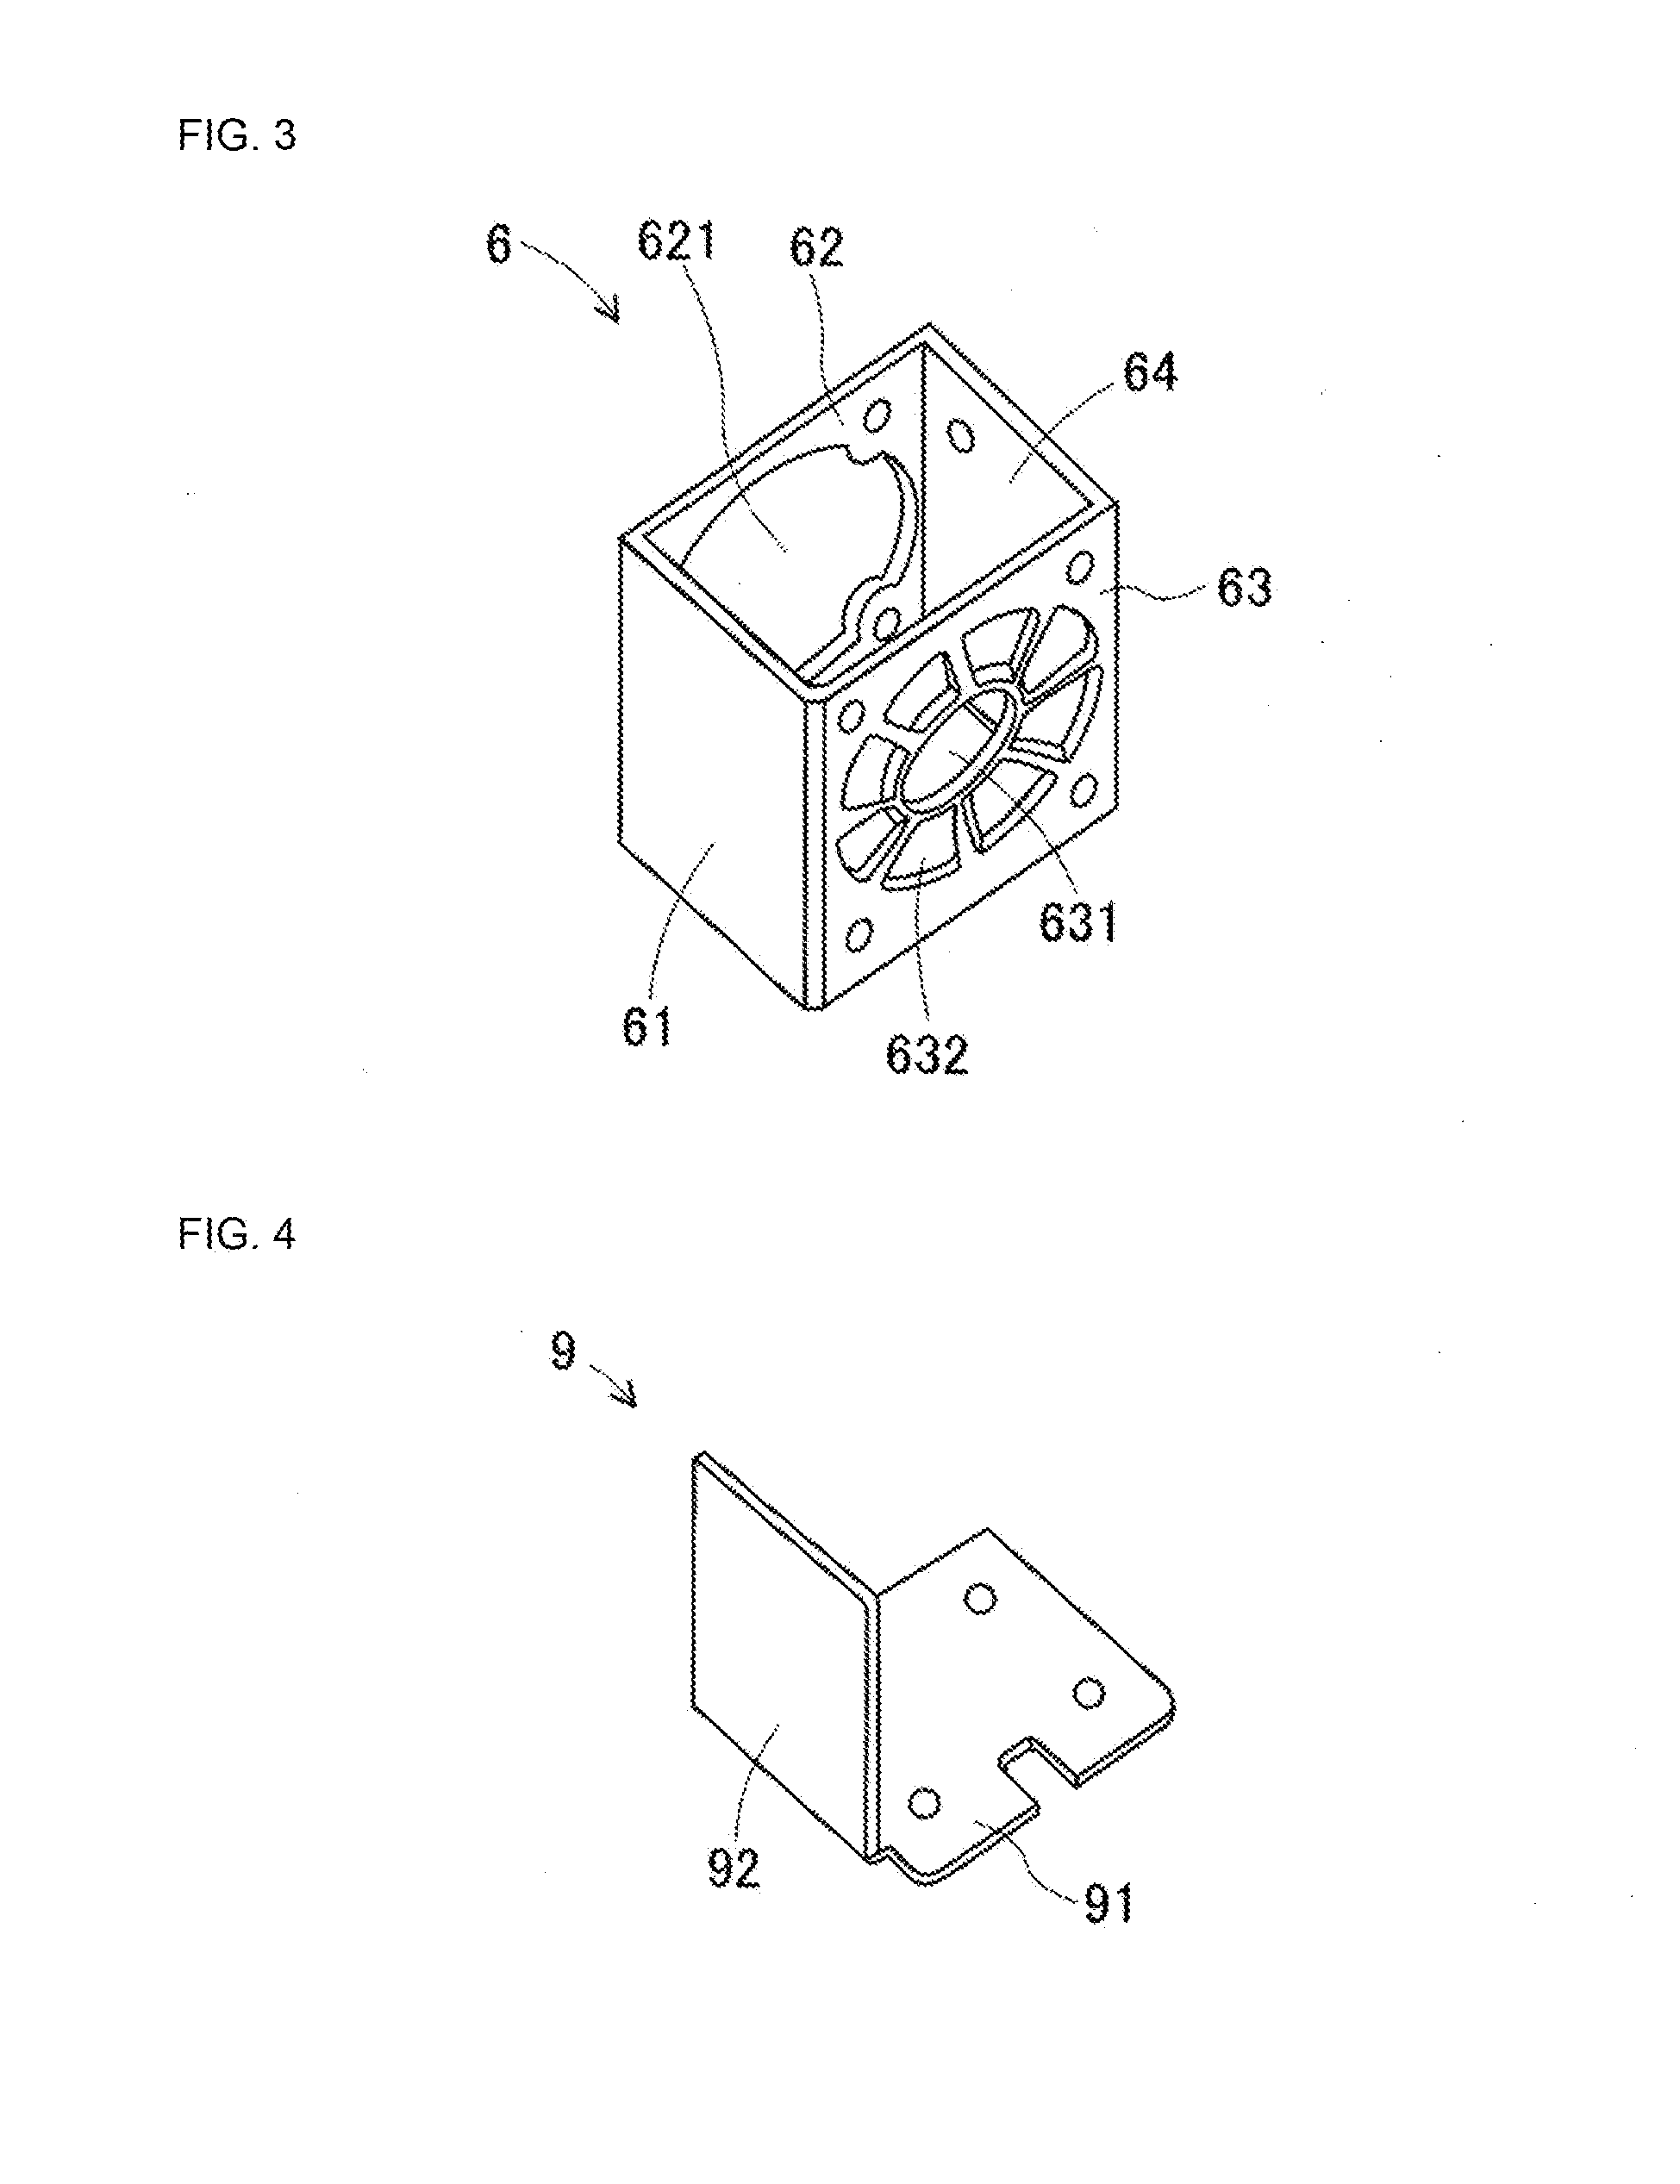 Linear motor device